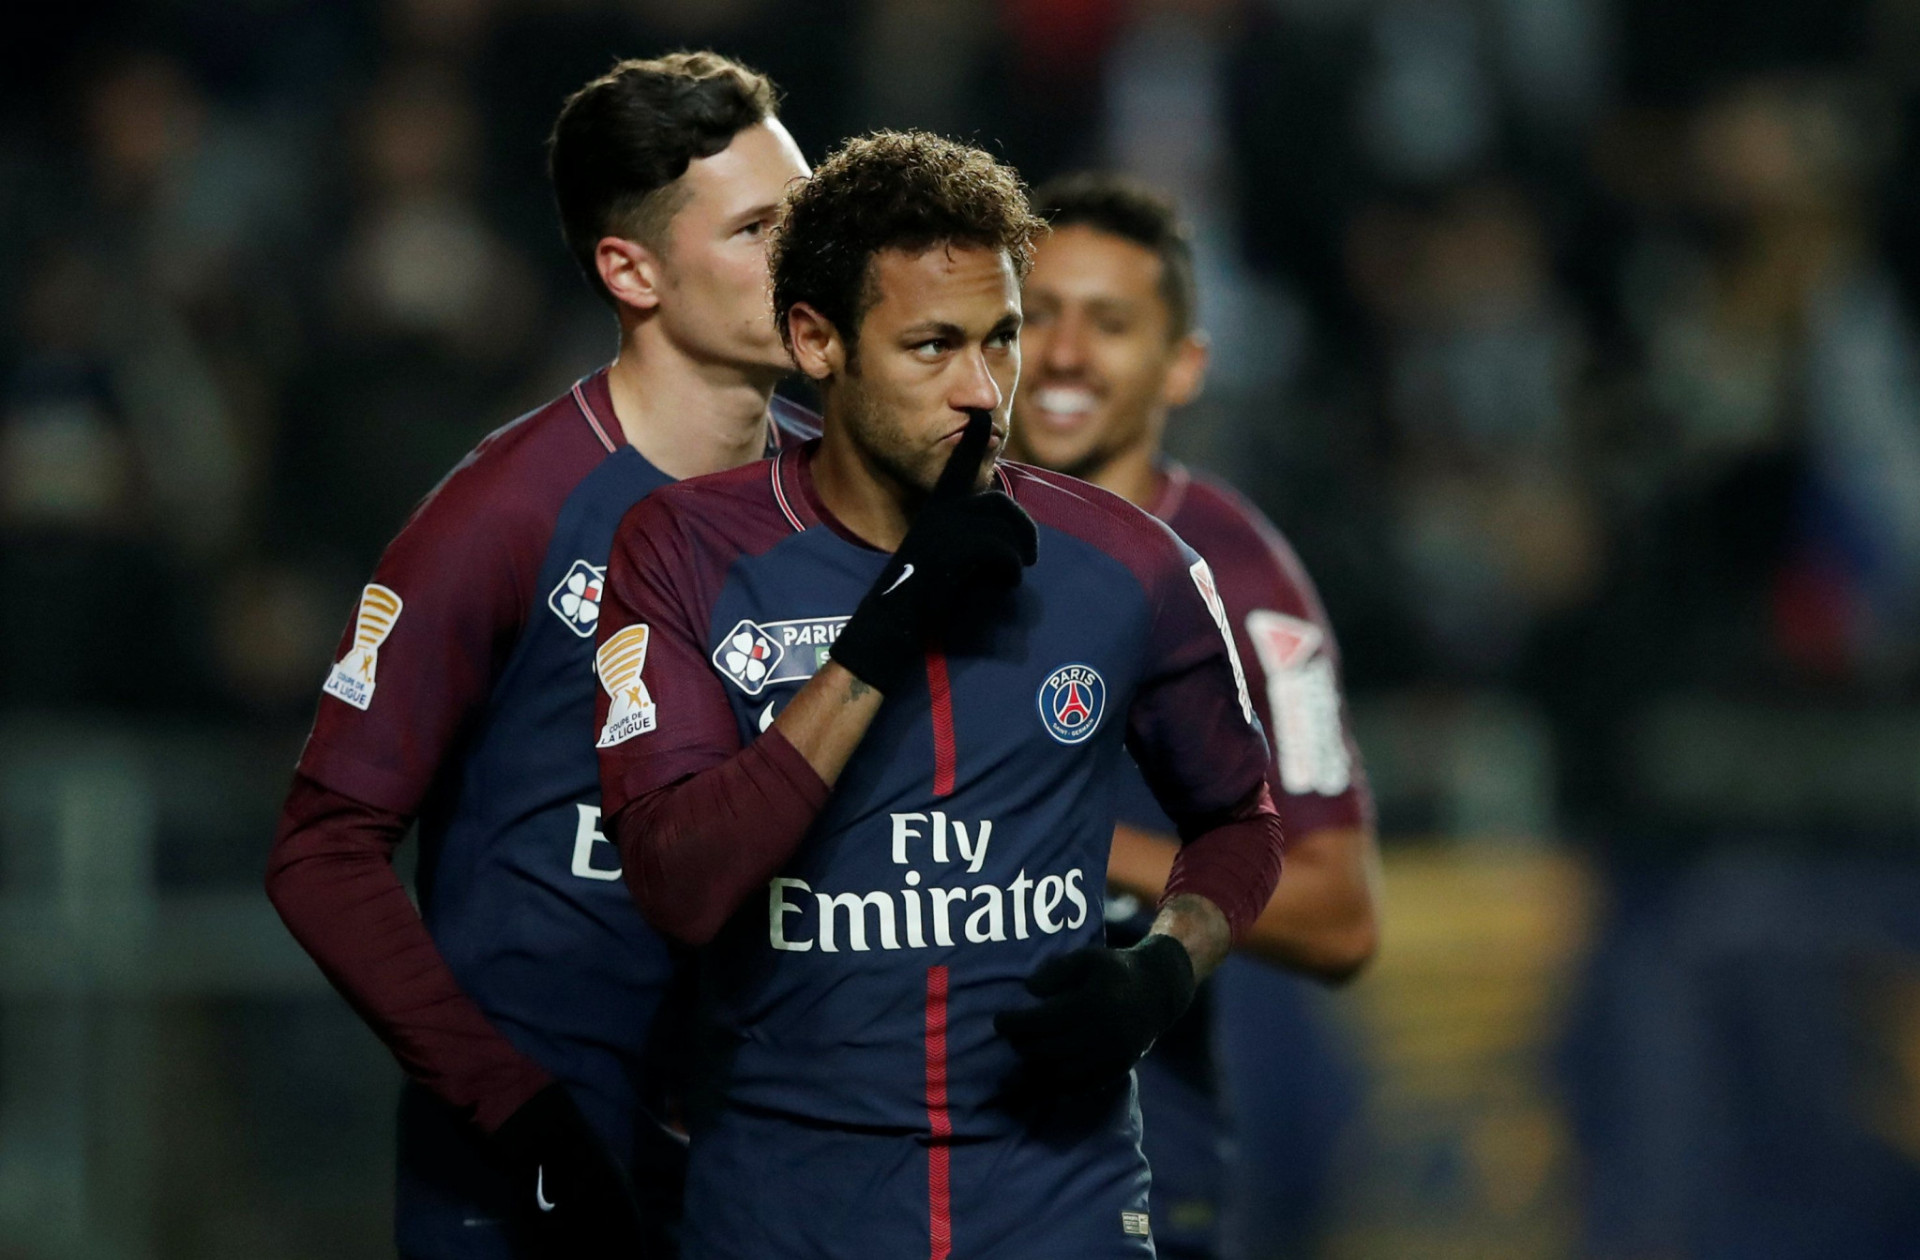 Jedným zo spúšťačov urýchlenia boja proti najbohatším klubom bol aj vlaňajší rekordný prestup Brazílčana Neymara do Paris St. Germain za 222 miliónov eur.